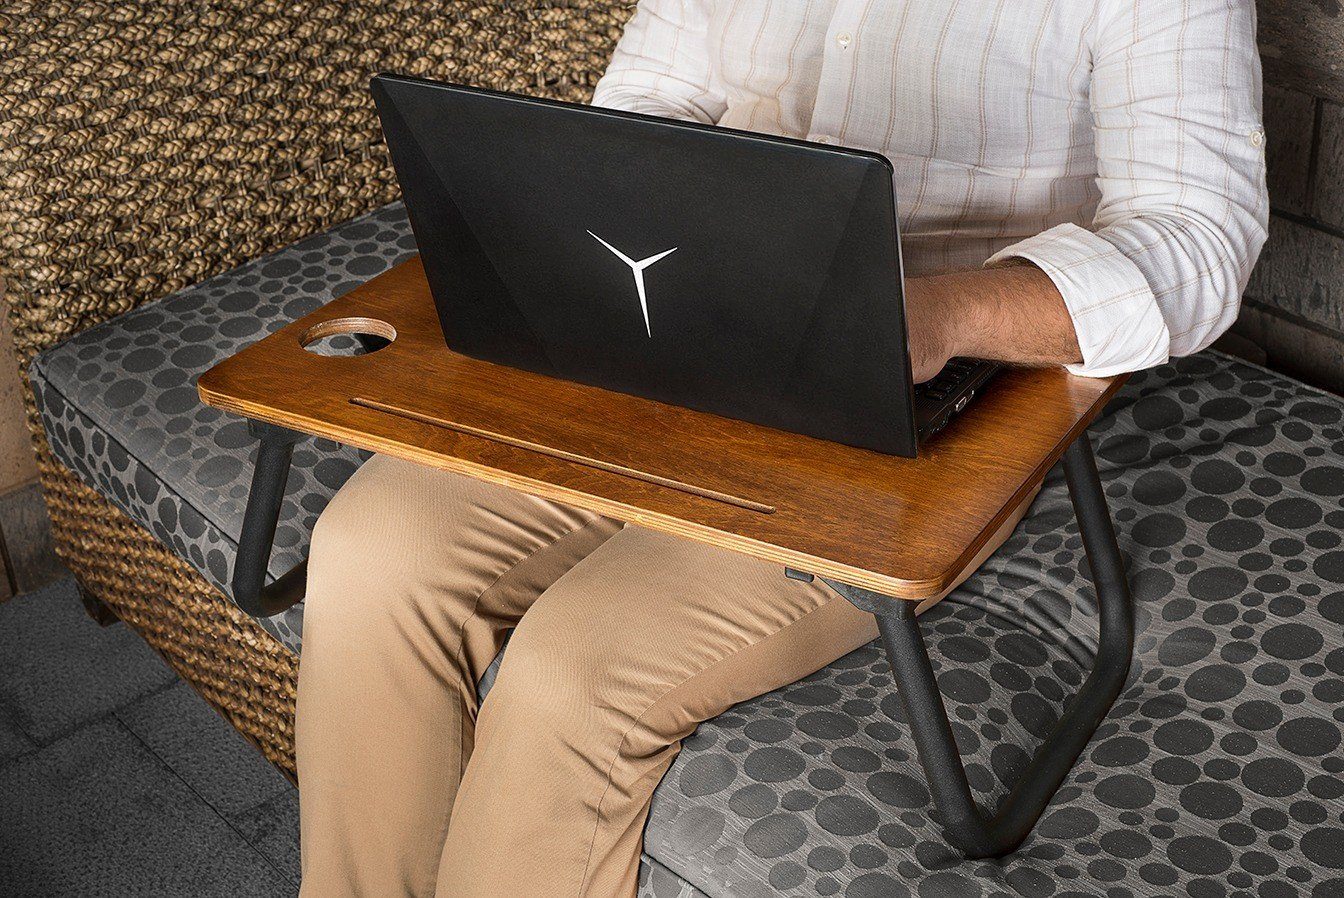 Skye Decor Couchtisch Laptop SehpaVLV,Schwarz, 45x60x20 cm, 100% Birkenbaum | Couchtische